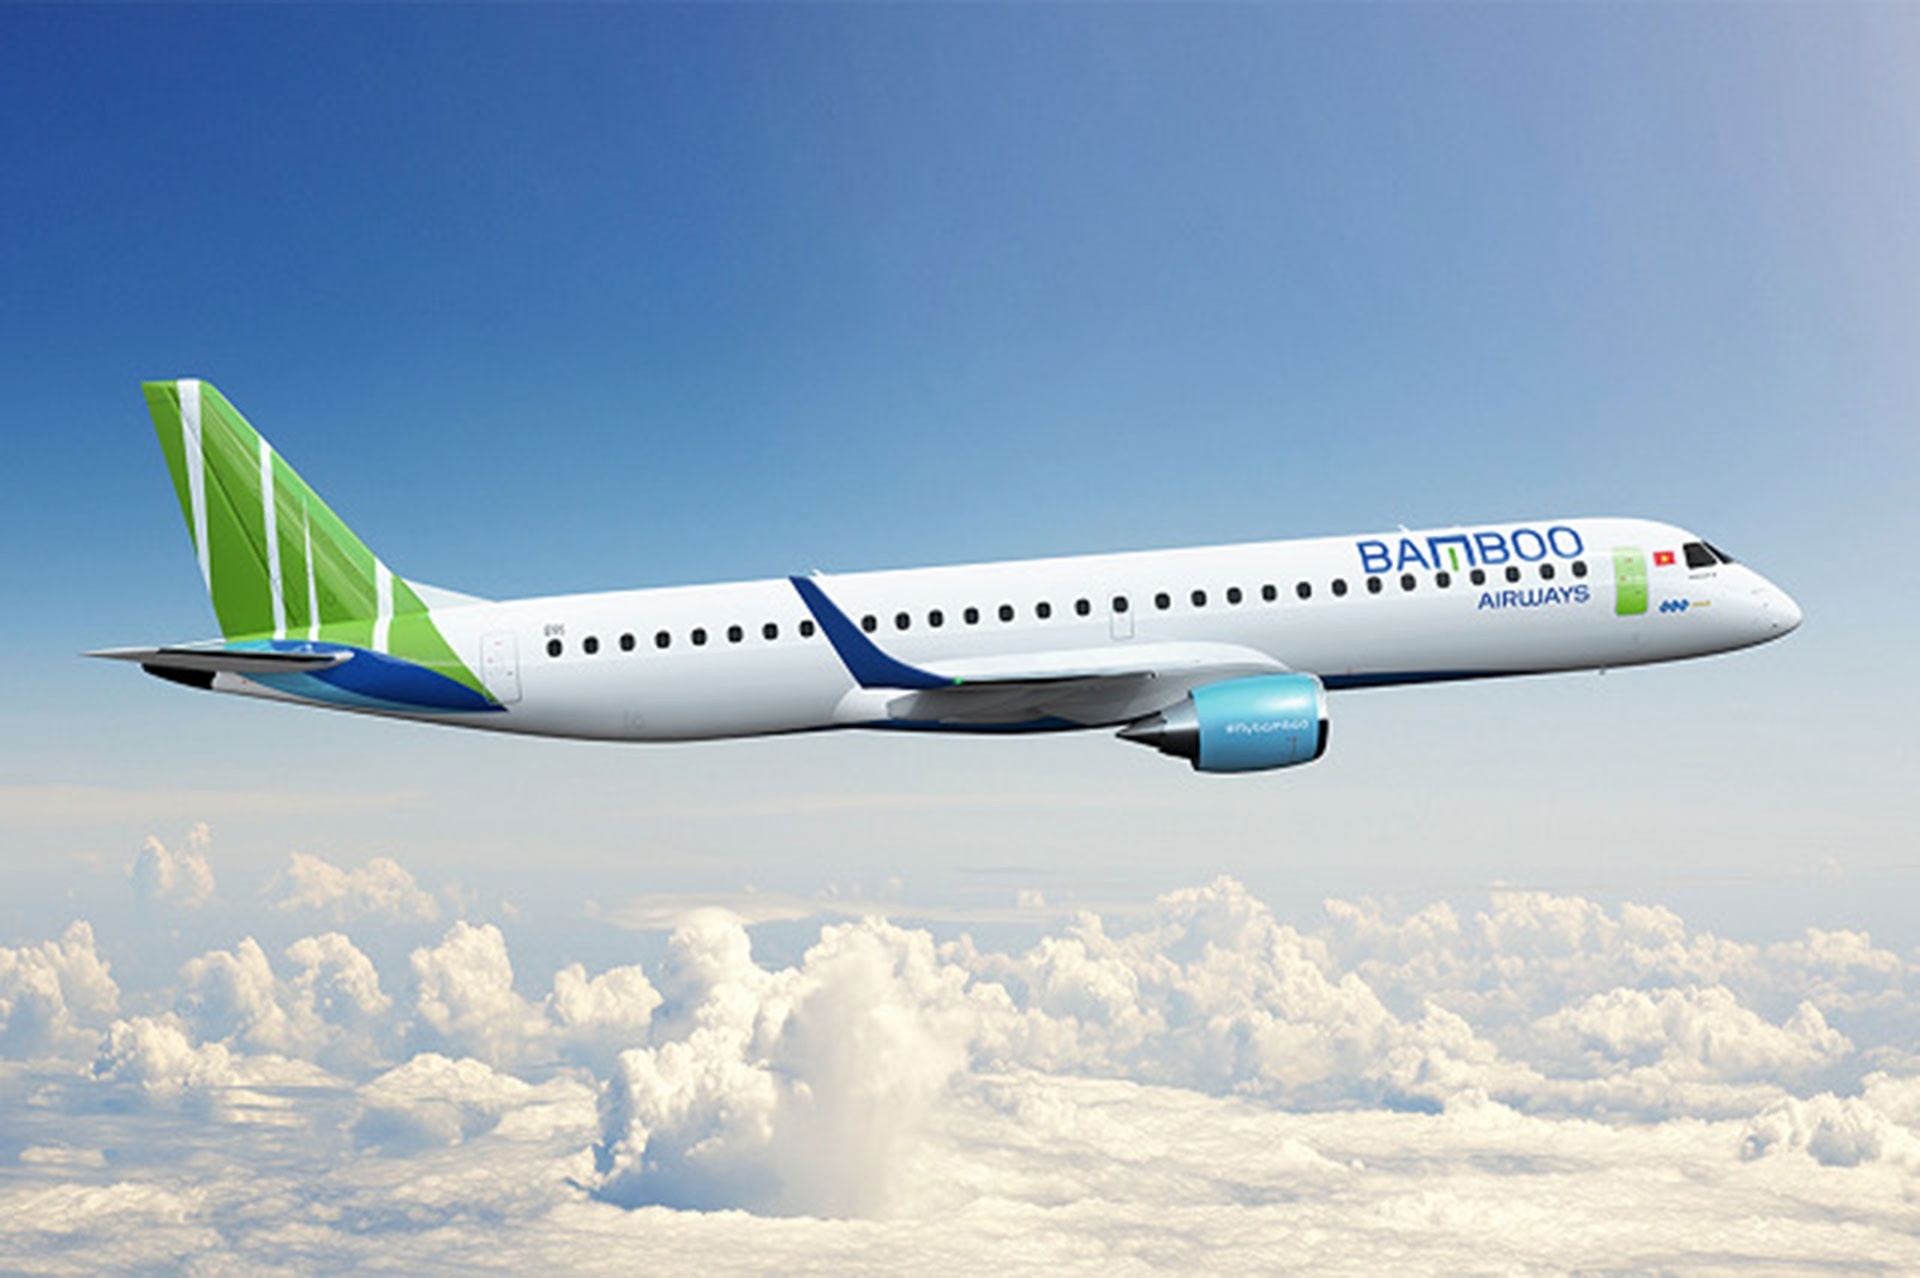 Kinh doanh “bết bát”, toàn bộ thành viên HĐQT Bamboo Airways xin từ nhiệm